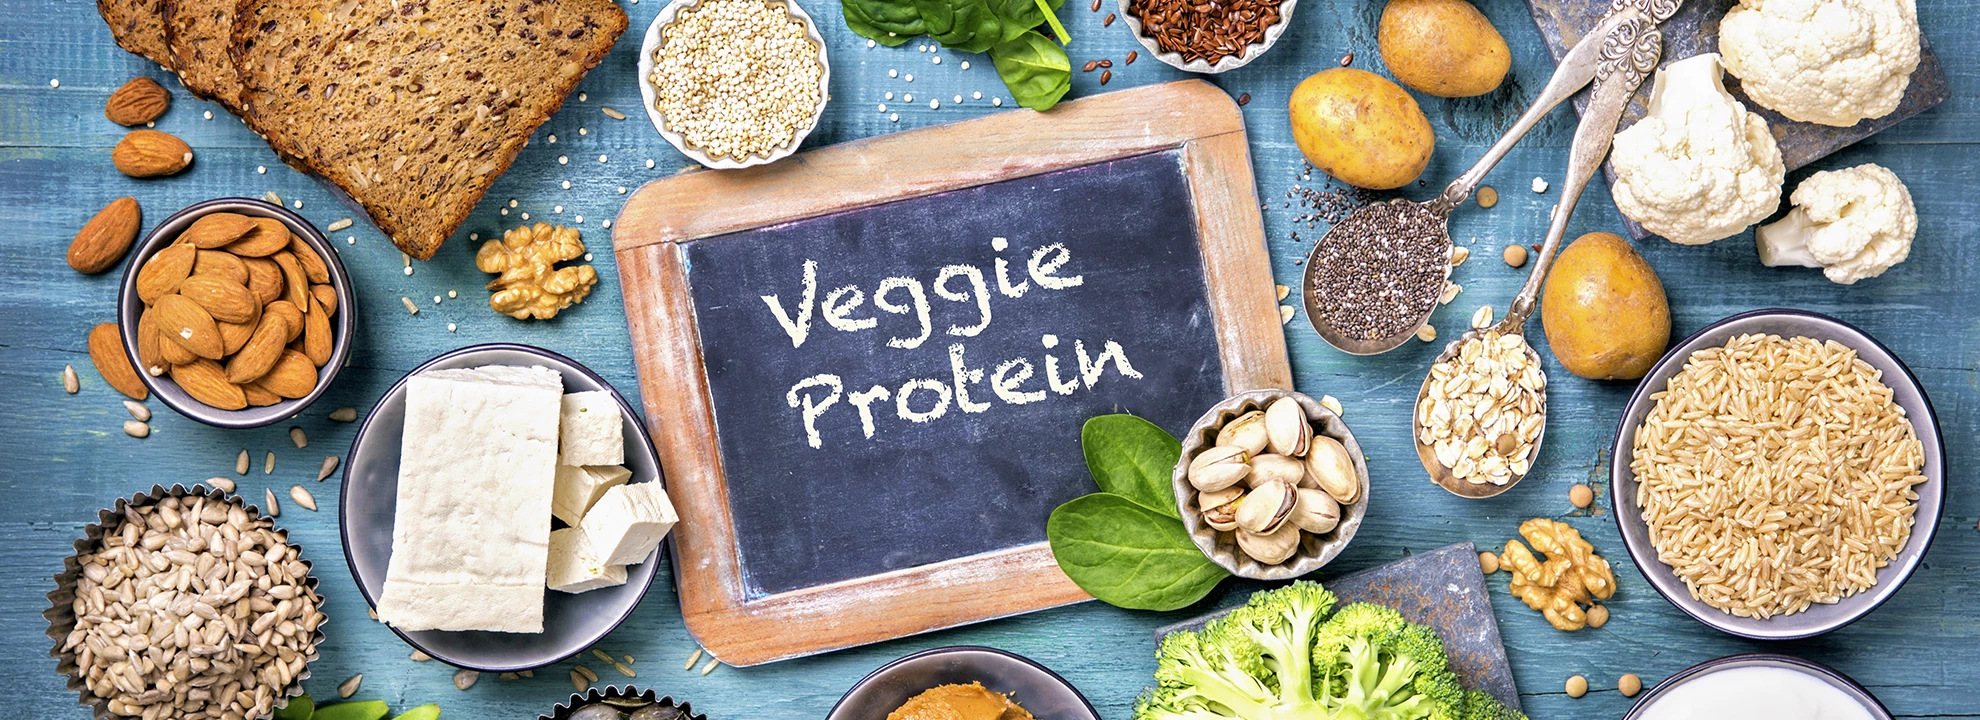 Quelles sont les meilleures sources de protéines végétales?